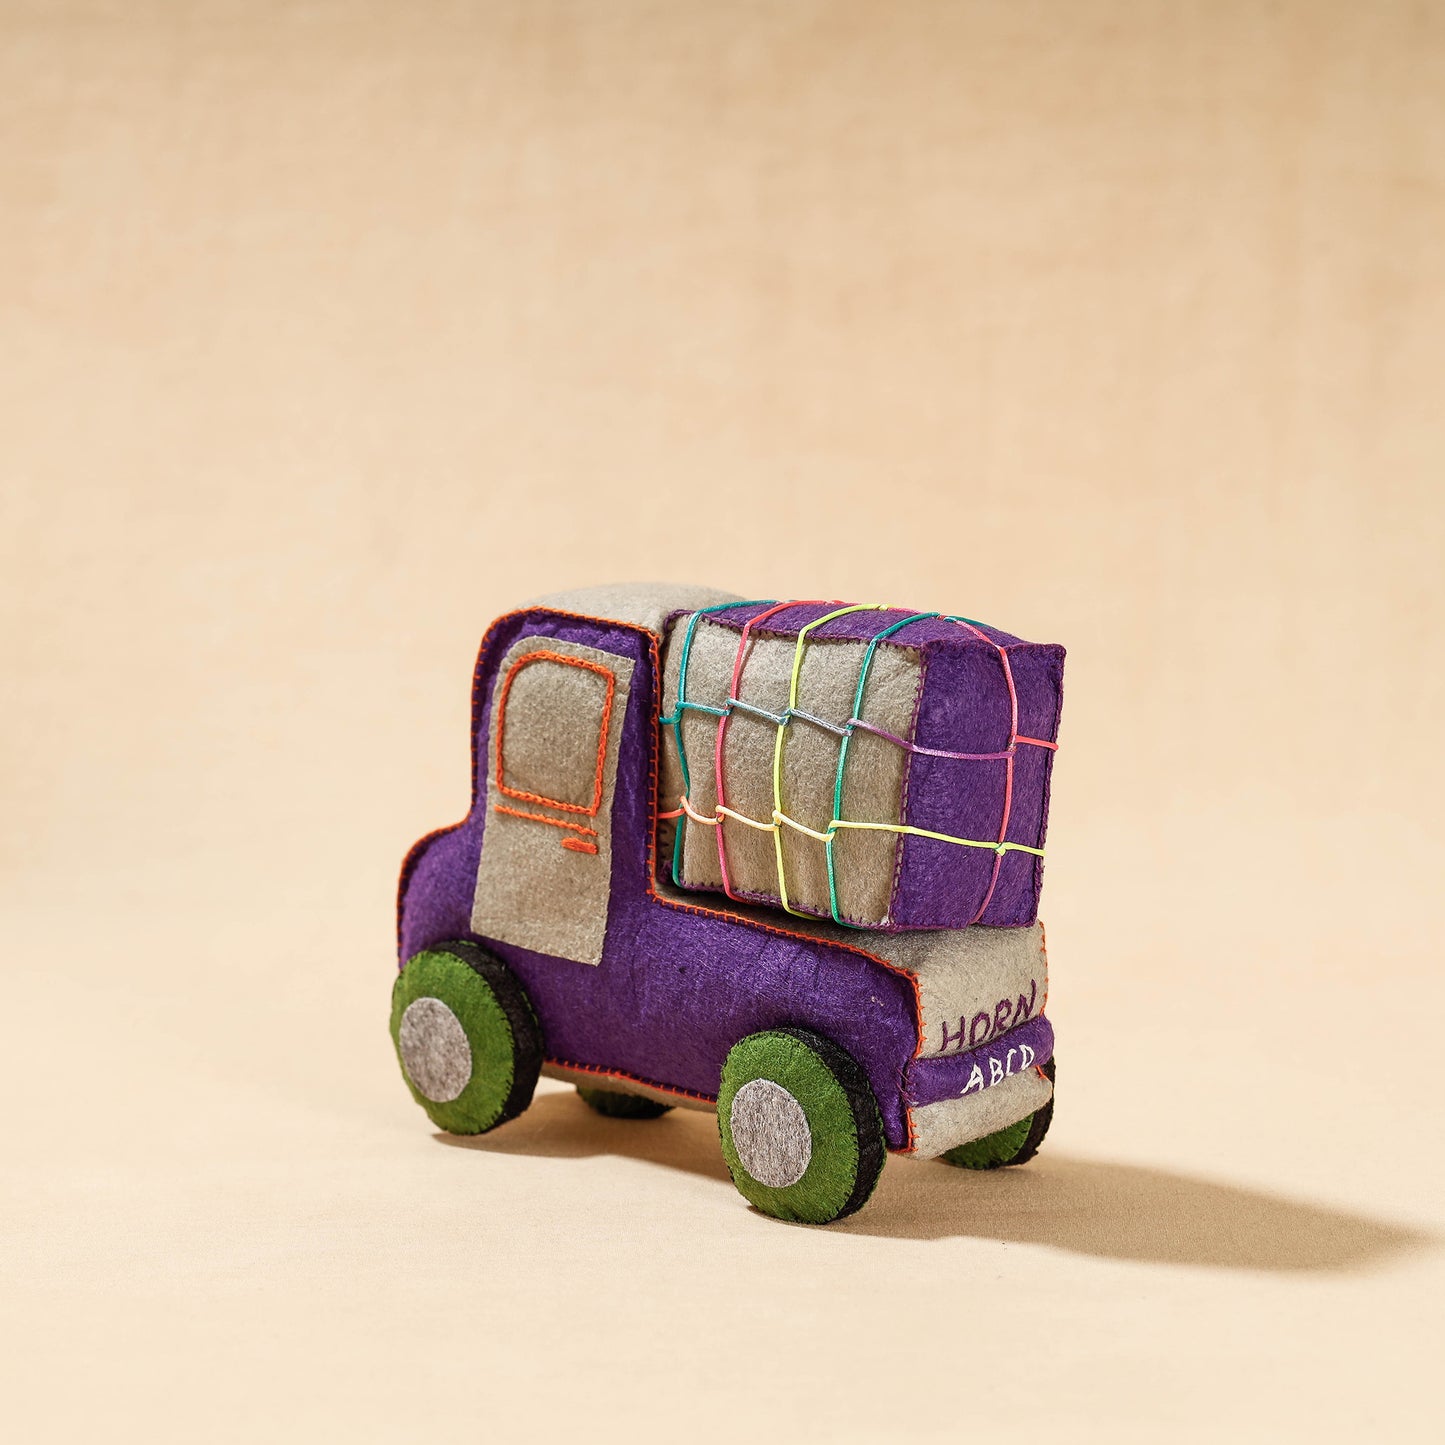 Truck - Handmade Felt Work Stuffed Soft Toy